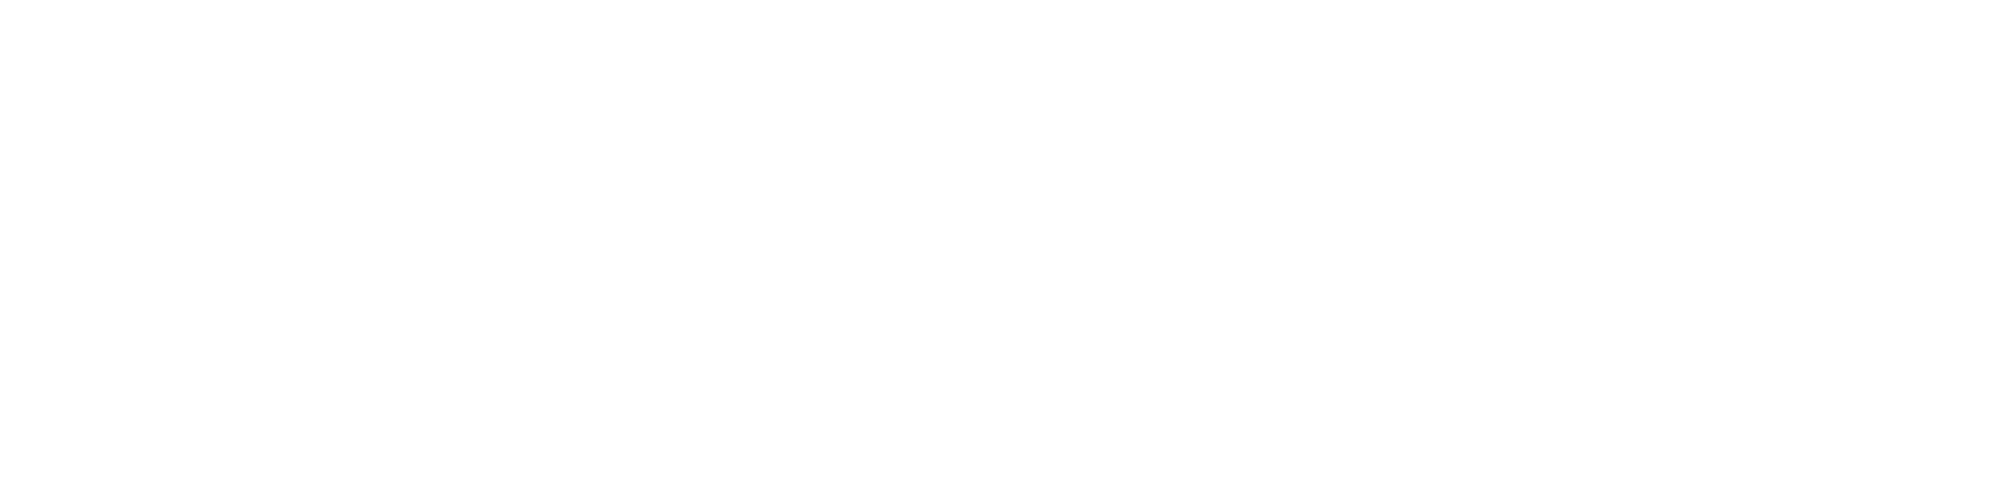 body image coaching roadmap logo 7